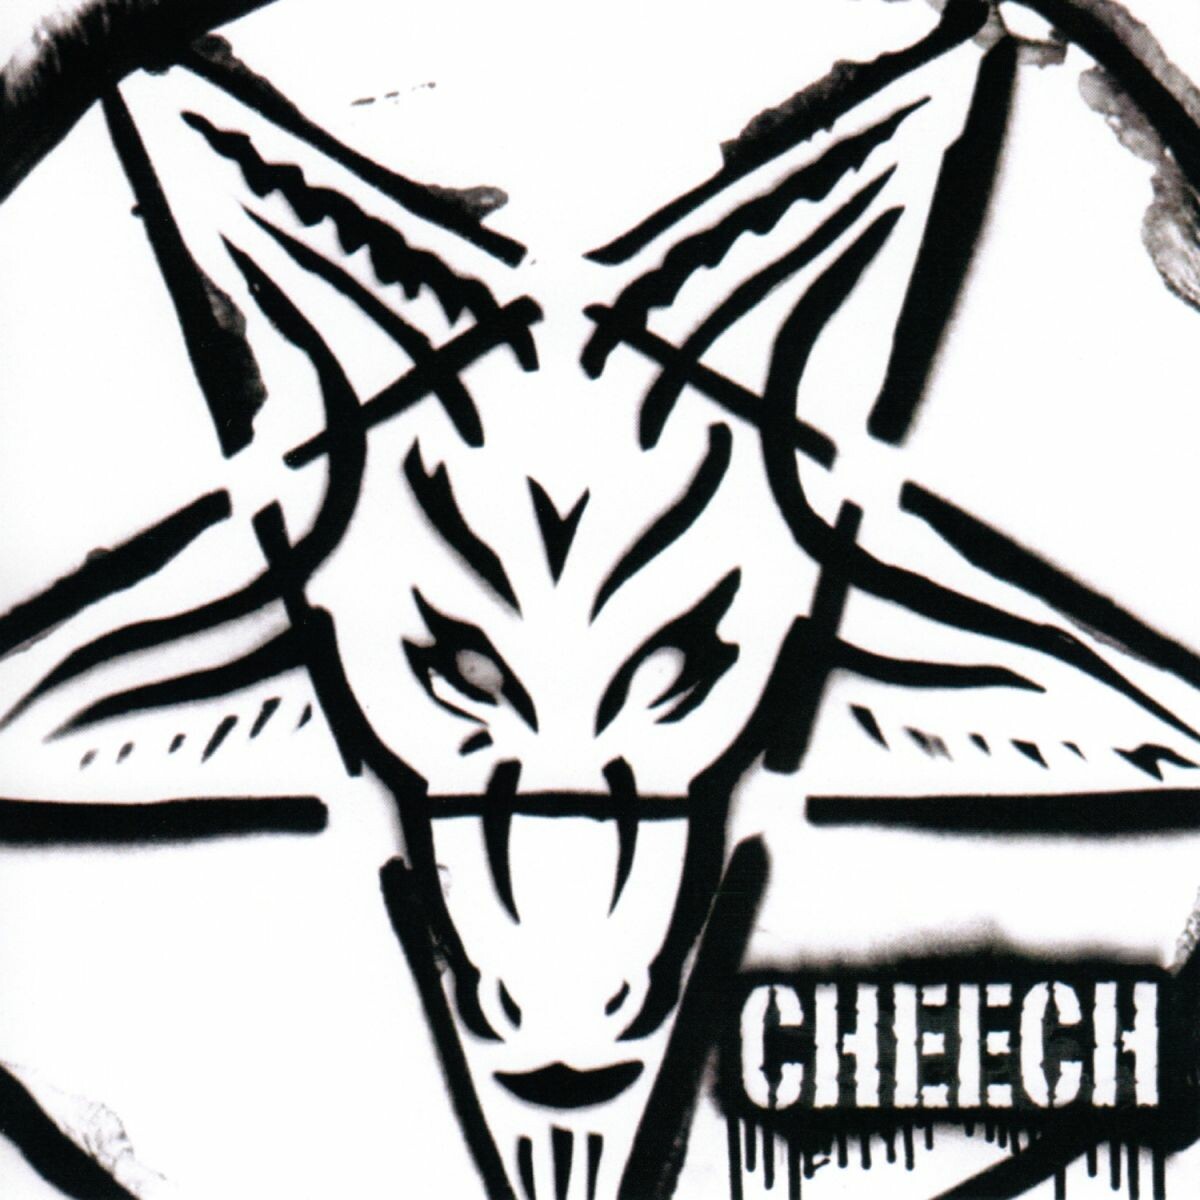 Cheech-P.A.G.A.N.-16BIT-WEB-FLAC-2009-VEXED